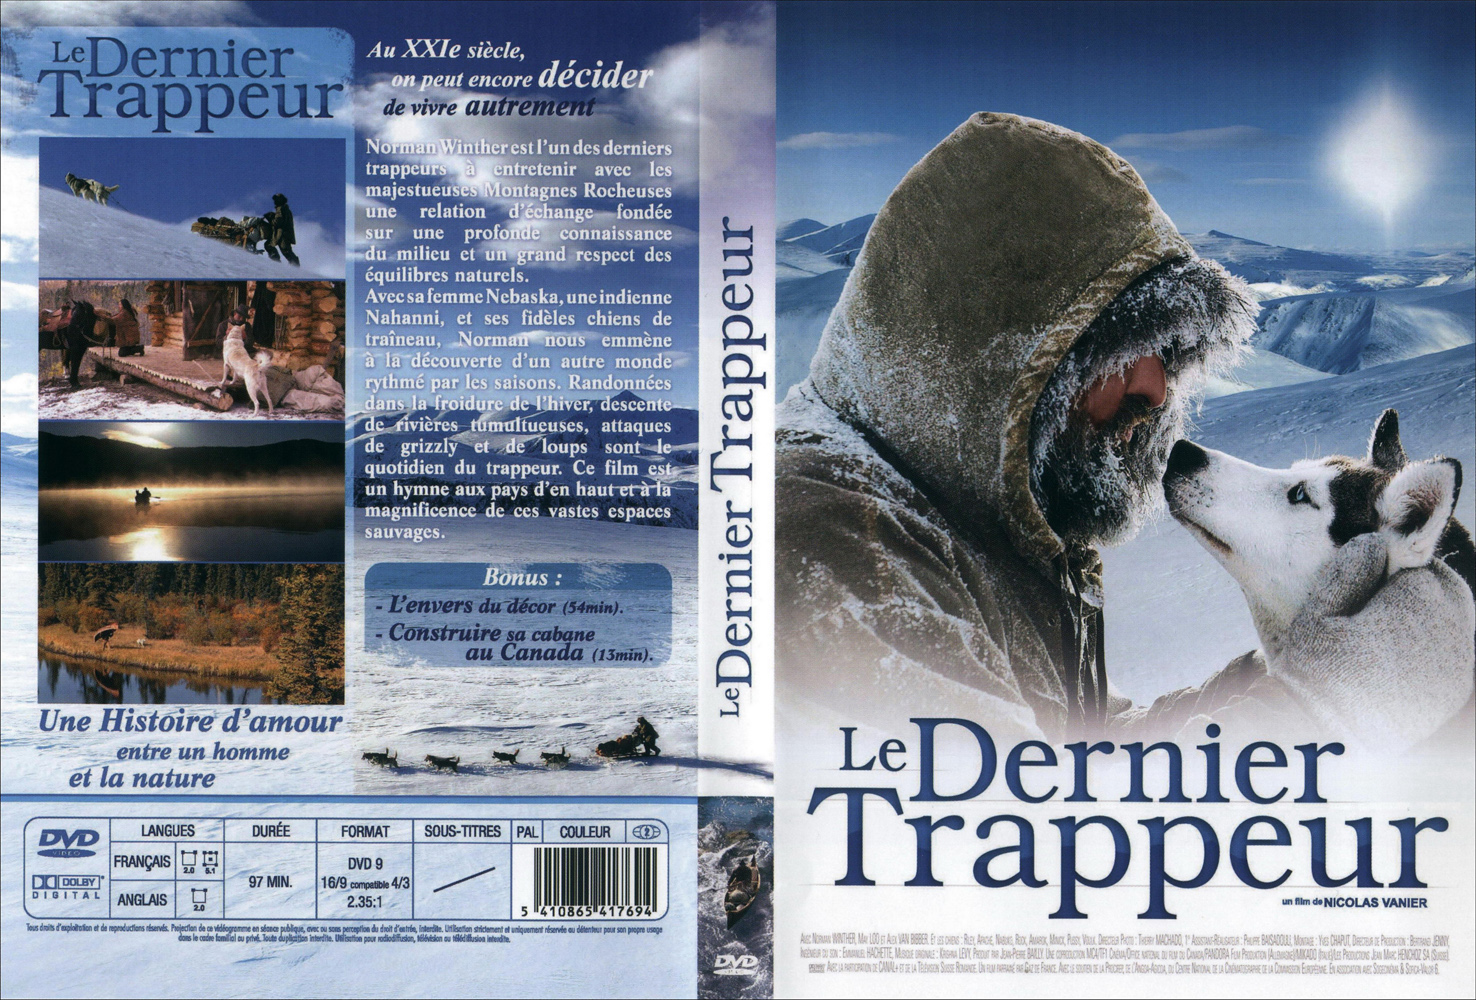 Jaquette DVD Le dernier trappeur v2